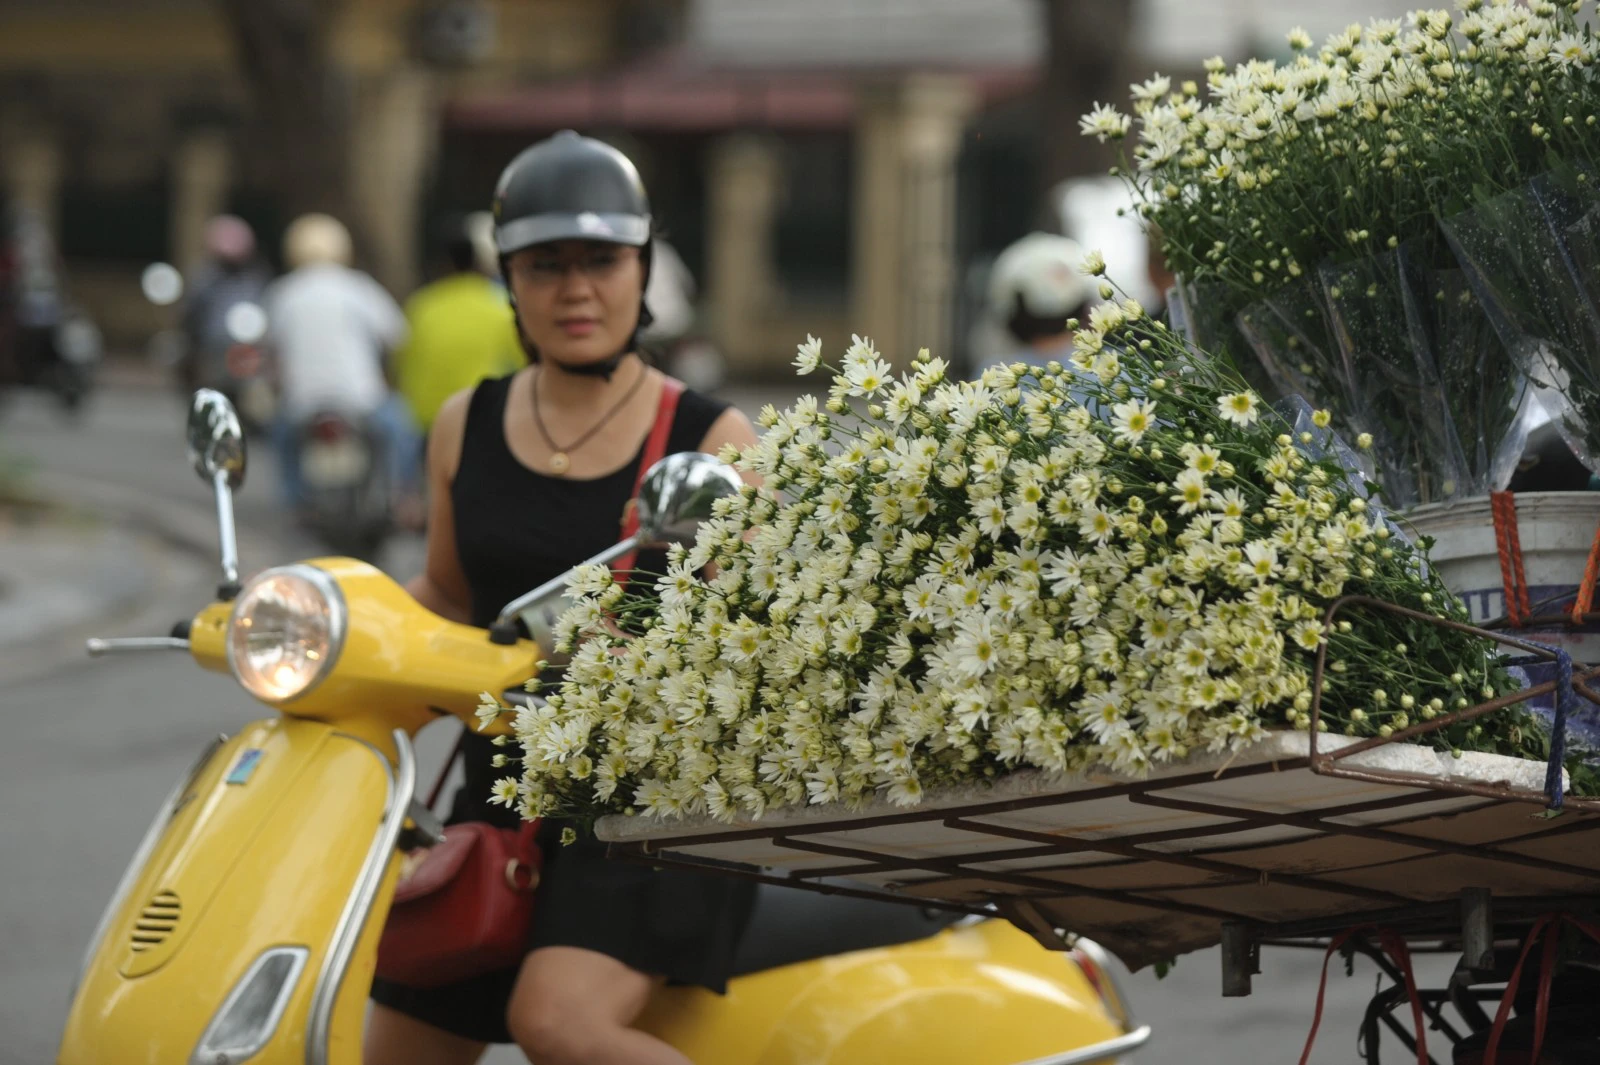 Những bông cúc xinh xắn, cánh trắng, nhụy vàng rung rinh sau thúng chất đầy hoa của đuôi xe đạp làm những người đi đường không thể không rung động, vội dừng xe lại để mua ít khóm hoa về nhà